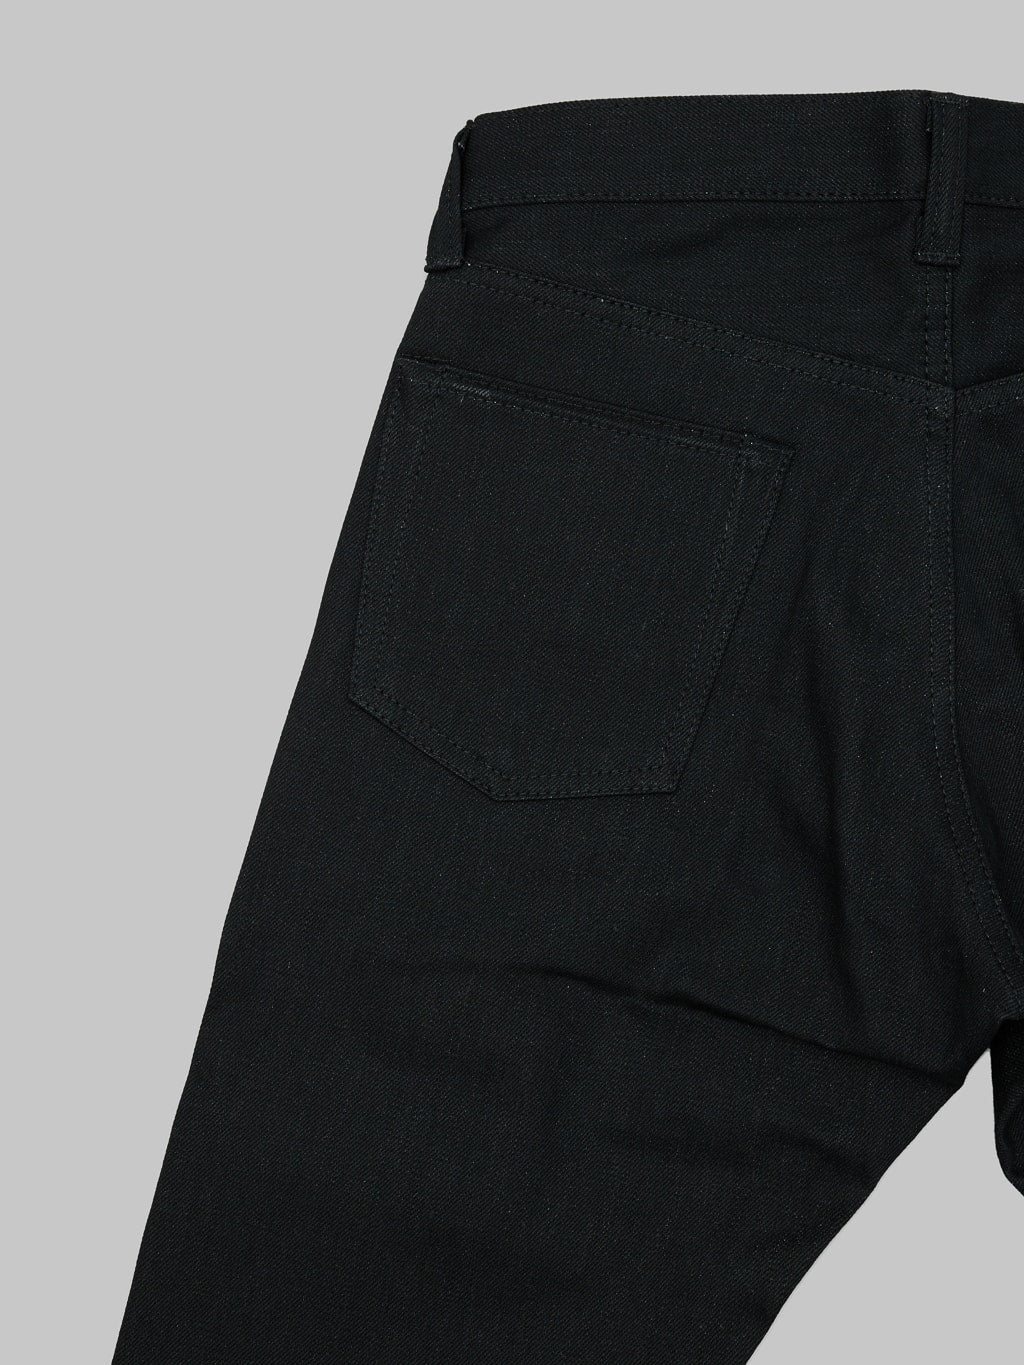 Momotaro 0605 B Black x Black Natural Tapered Jeans back pocket